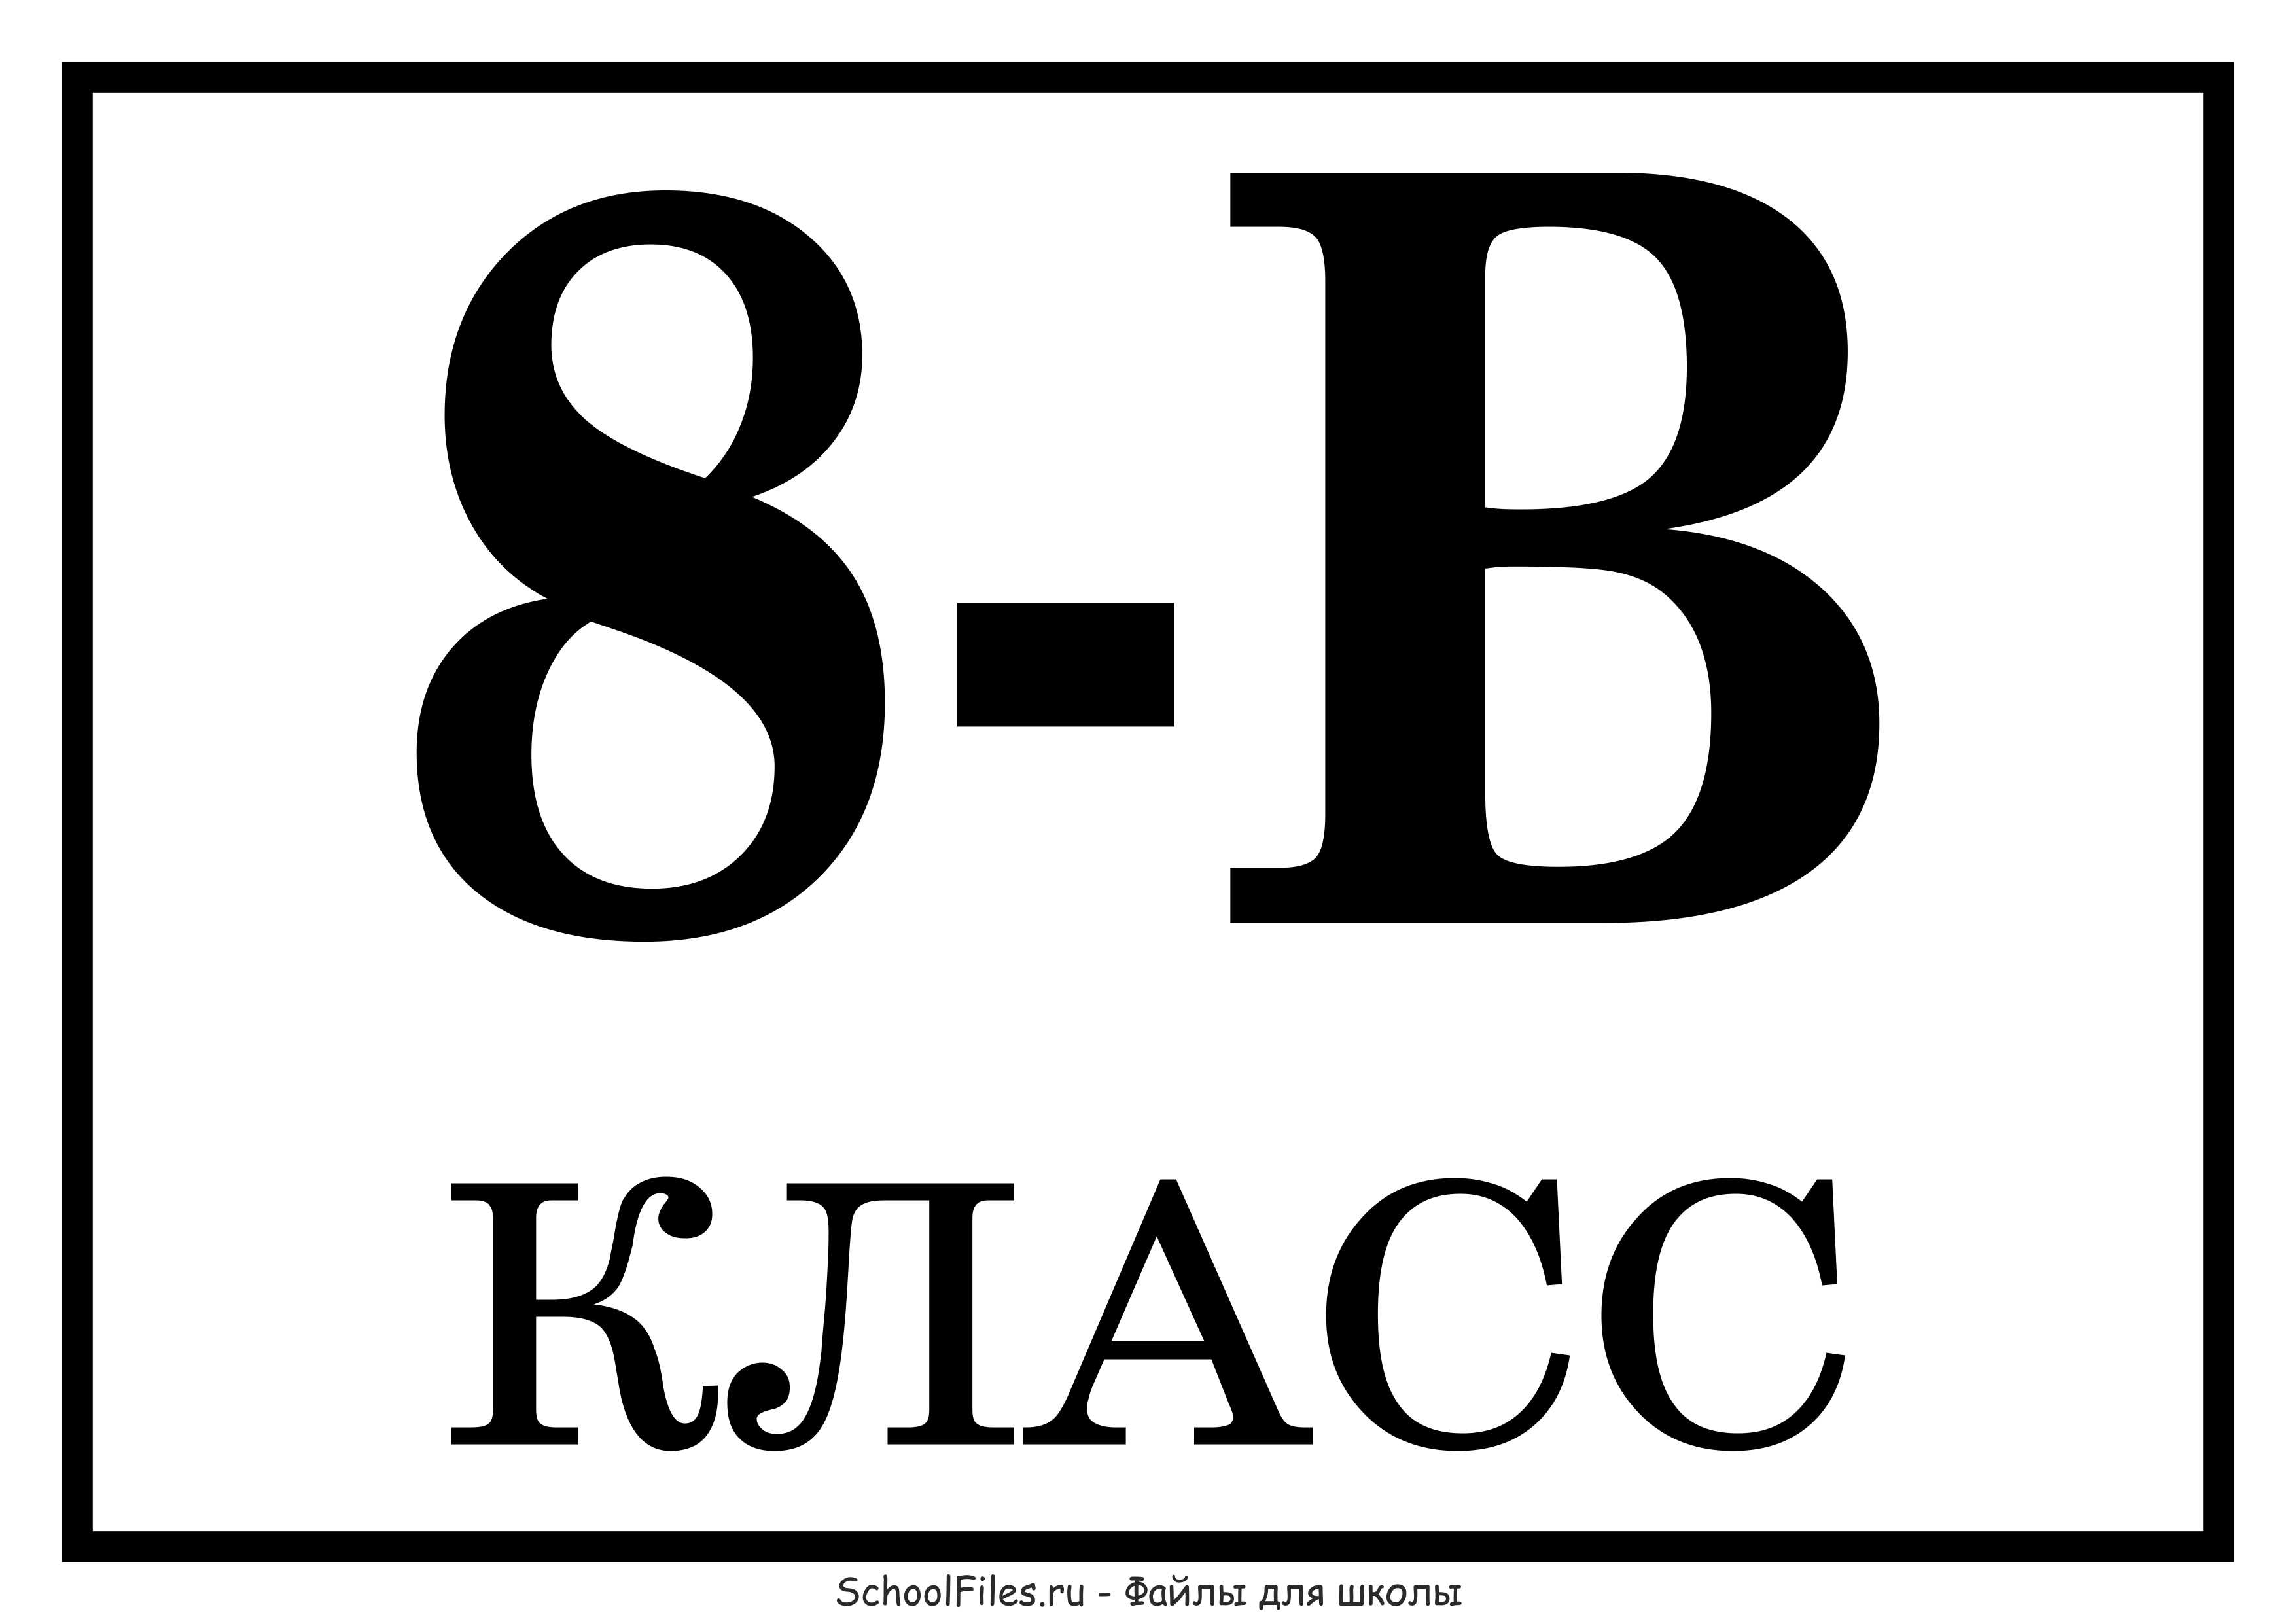 Б 6 8 е 8 13